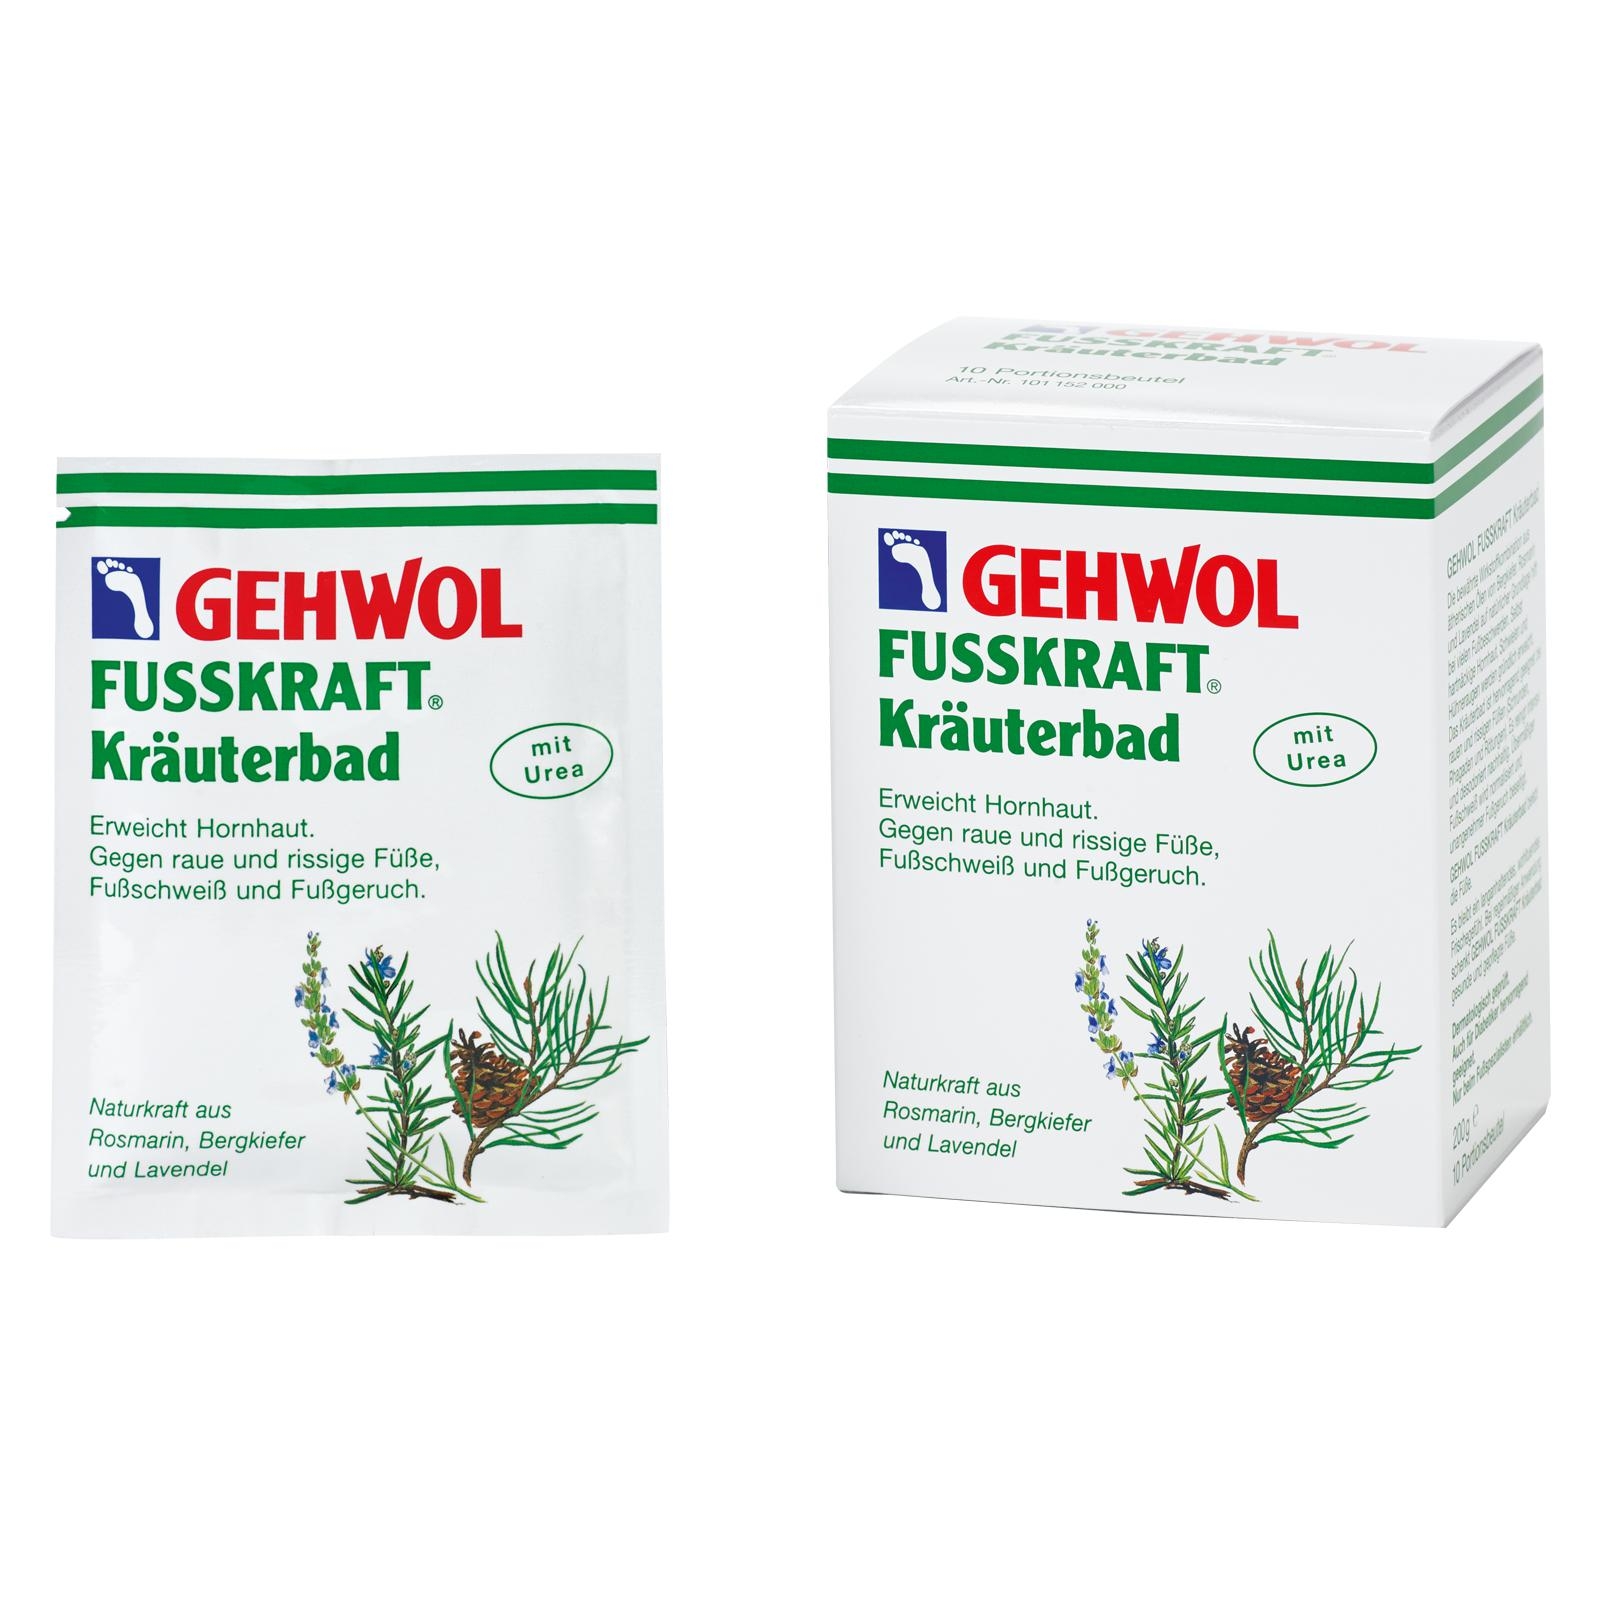 GEHWOL FUSSKRAFT Kräuterbad 10 Portionsbeutel - 200 g